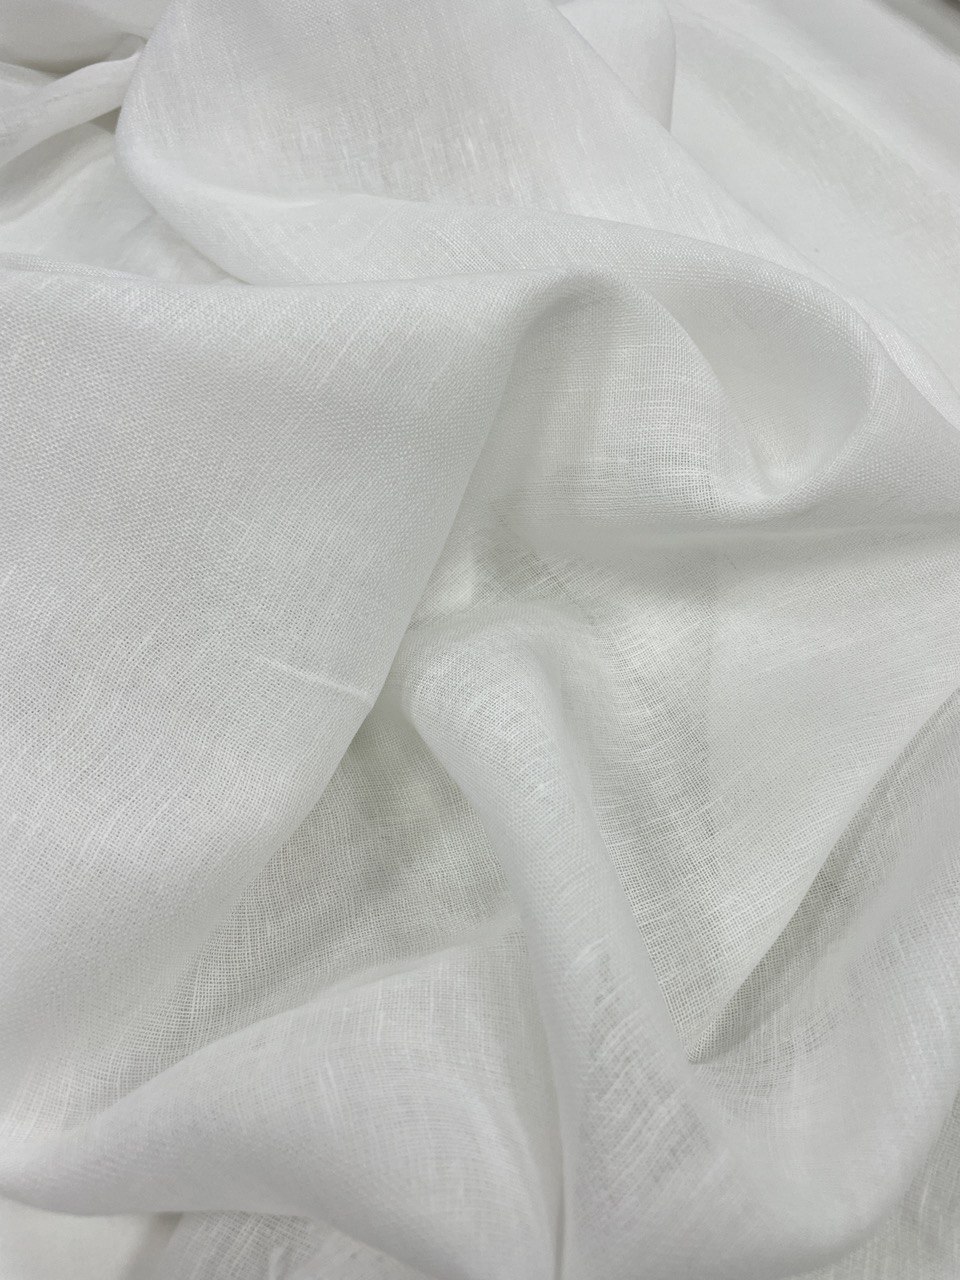 Ткань вуаль лен хлопок белая лилия фото 1